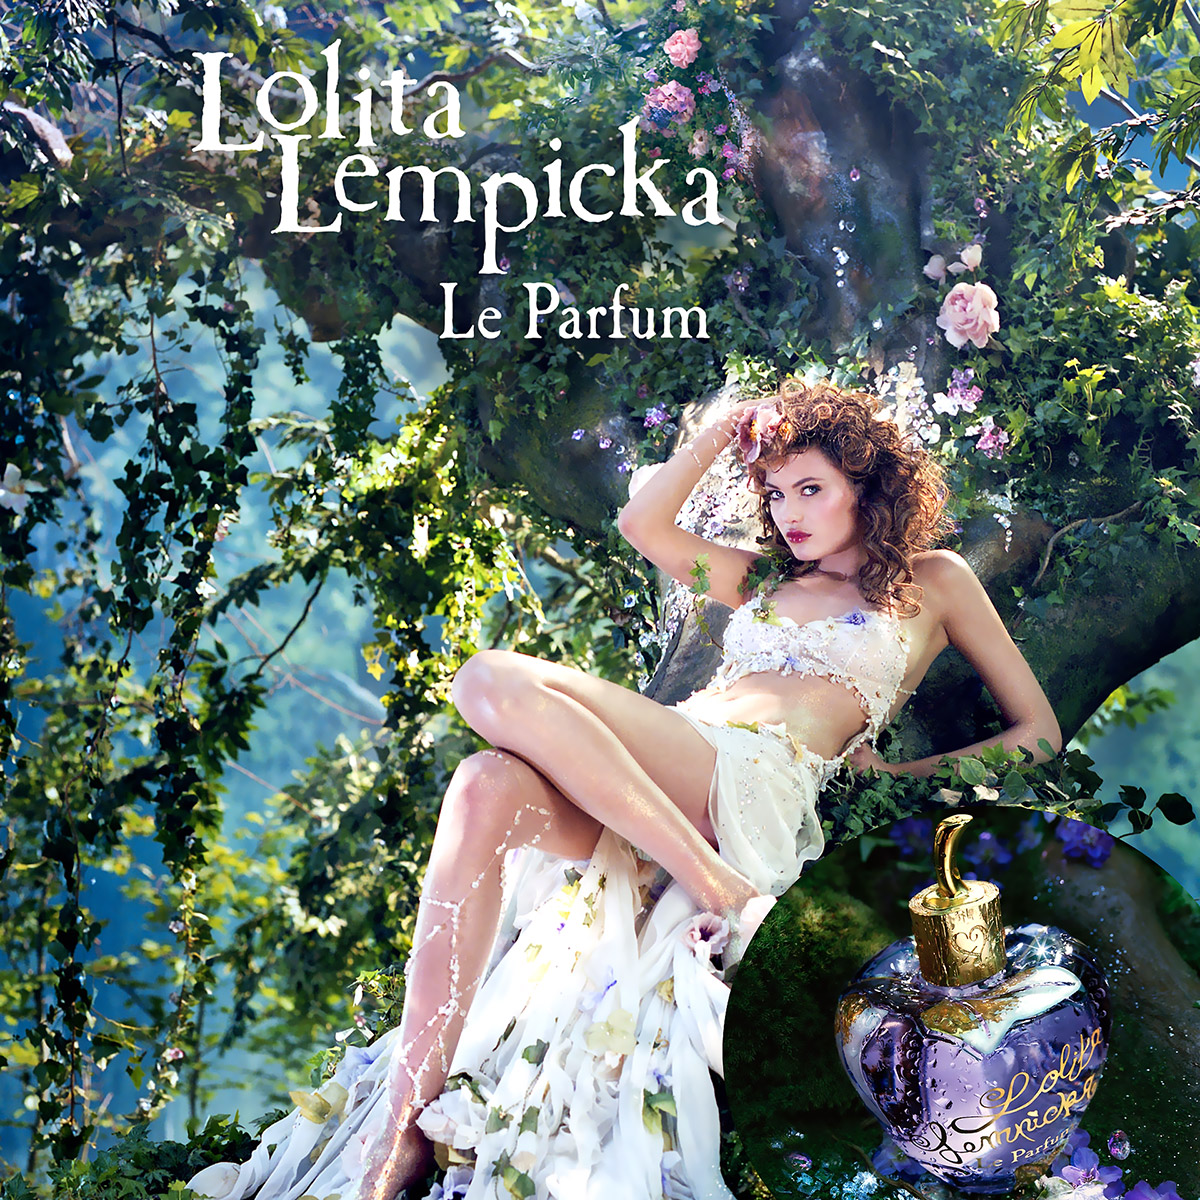 Musique de la pub Lolita Lempicka 2021